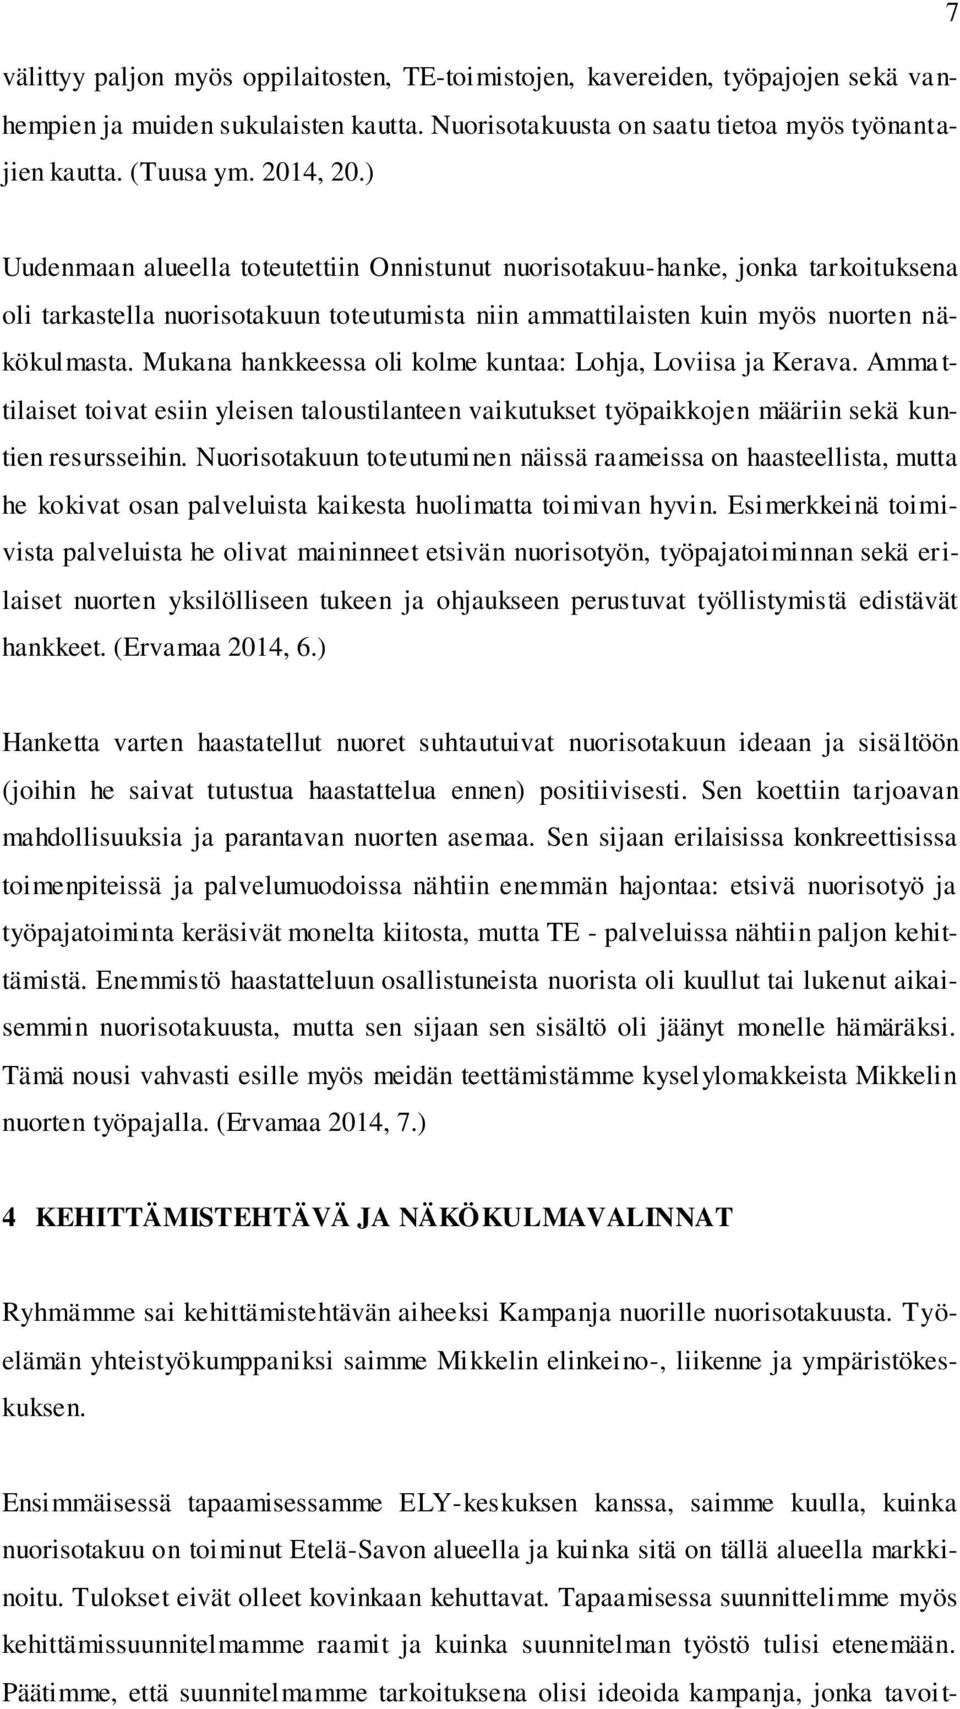 Mukana hankkeessa oli kolme kuntaa: Lohja, Loviisa ja Kerava. Amma t- tilaiset toivat esiin yleisen taloustilanteen vaikutukset työpaikkojen määriin sekä kuntien resursseihin.